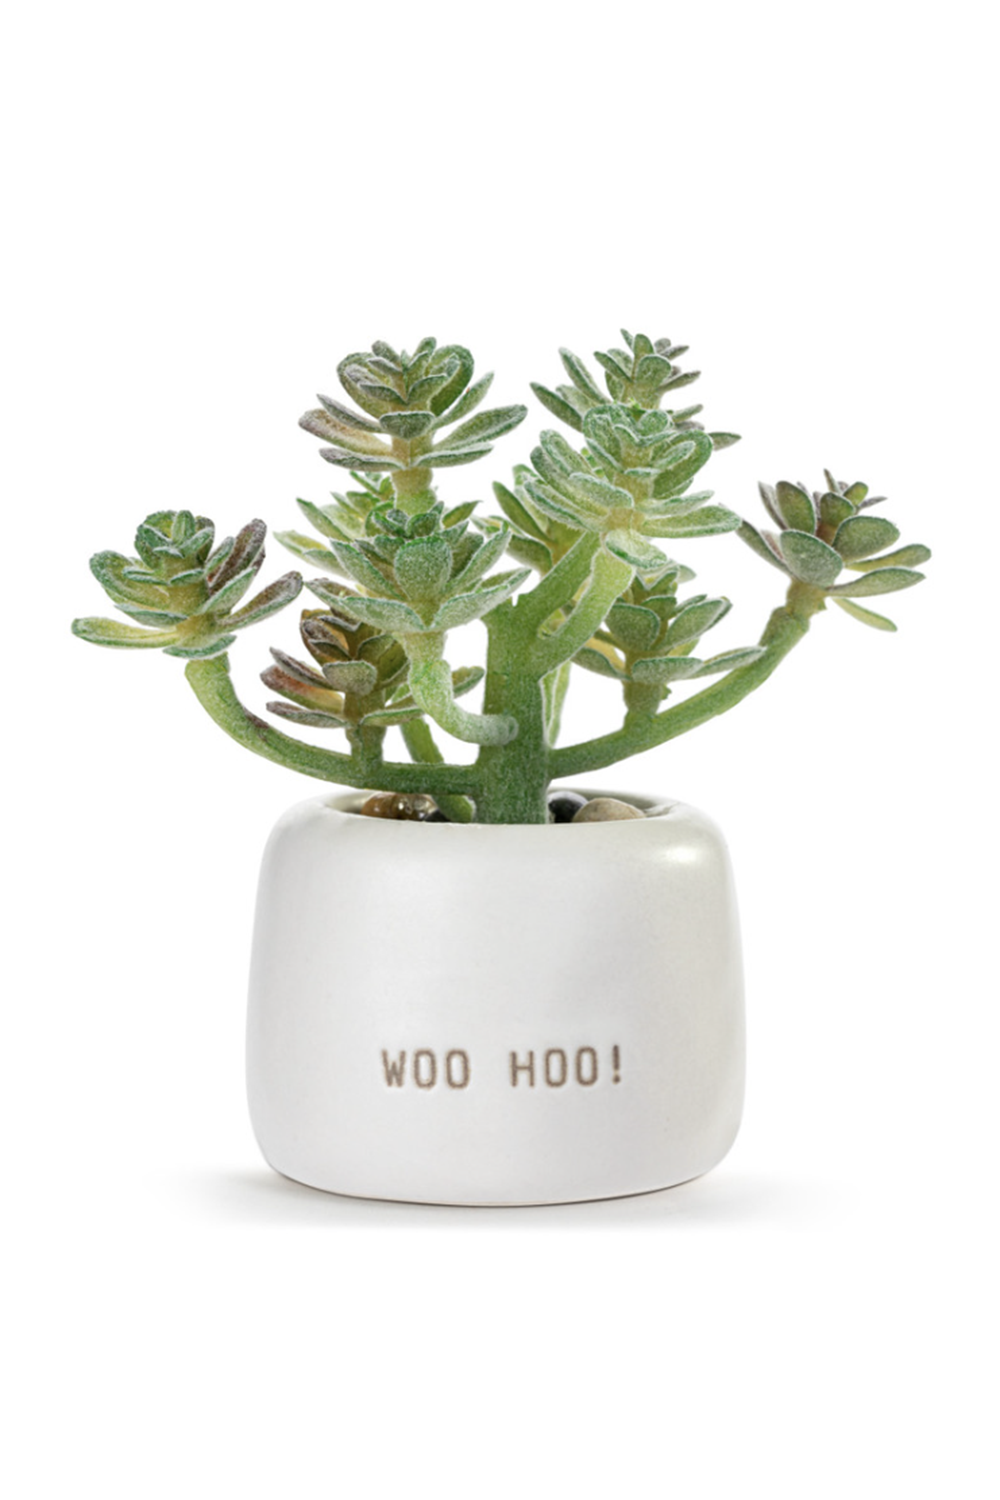 Mini Succulent - Woo Hoo